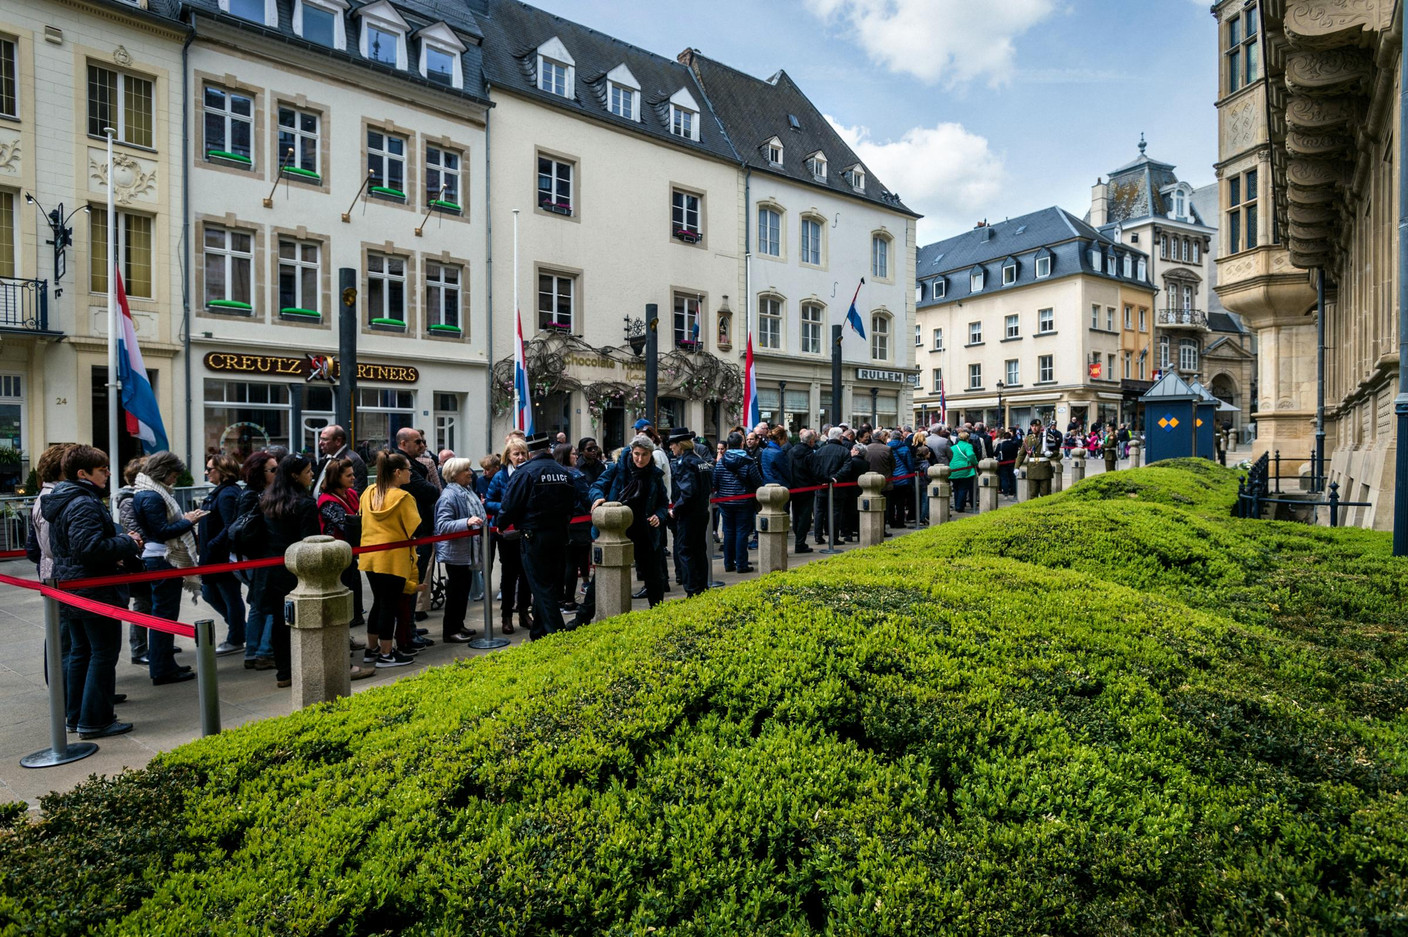 De nombreuses personnes ont fait la file devant le palais grand-ducal pour rendre hommage au Grand-Duc Jean (Photo: Mike Zenari)